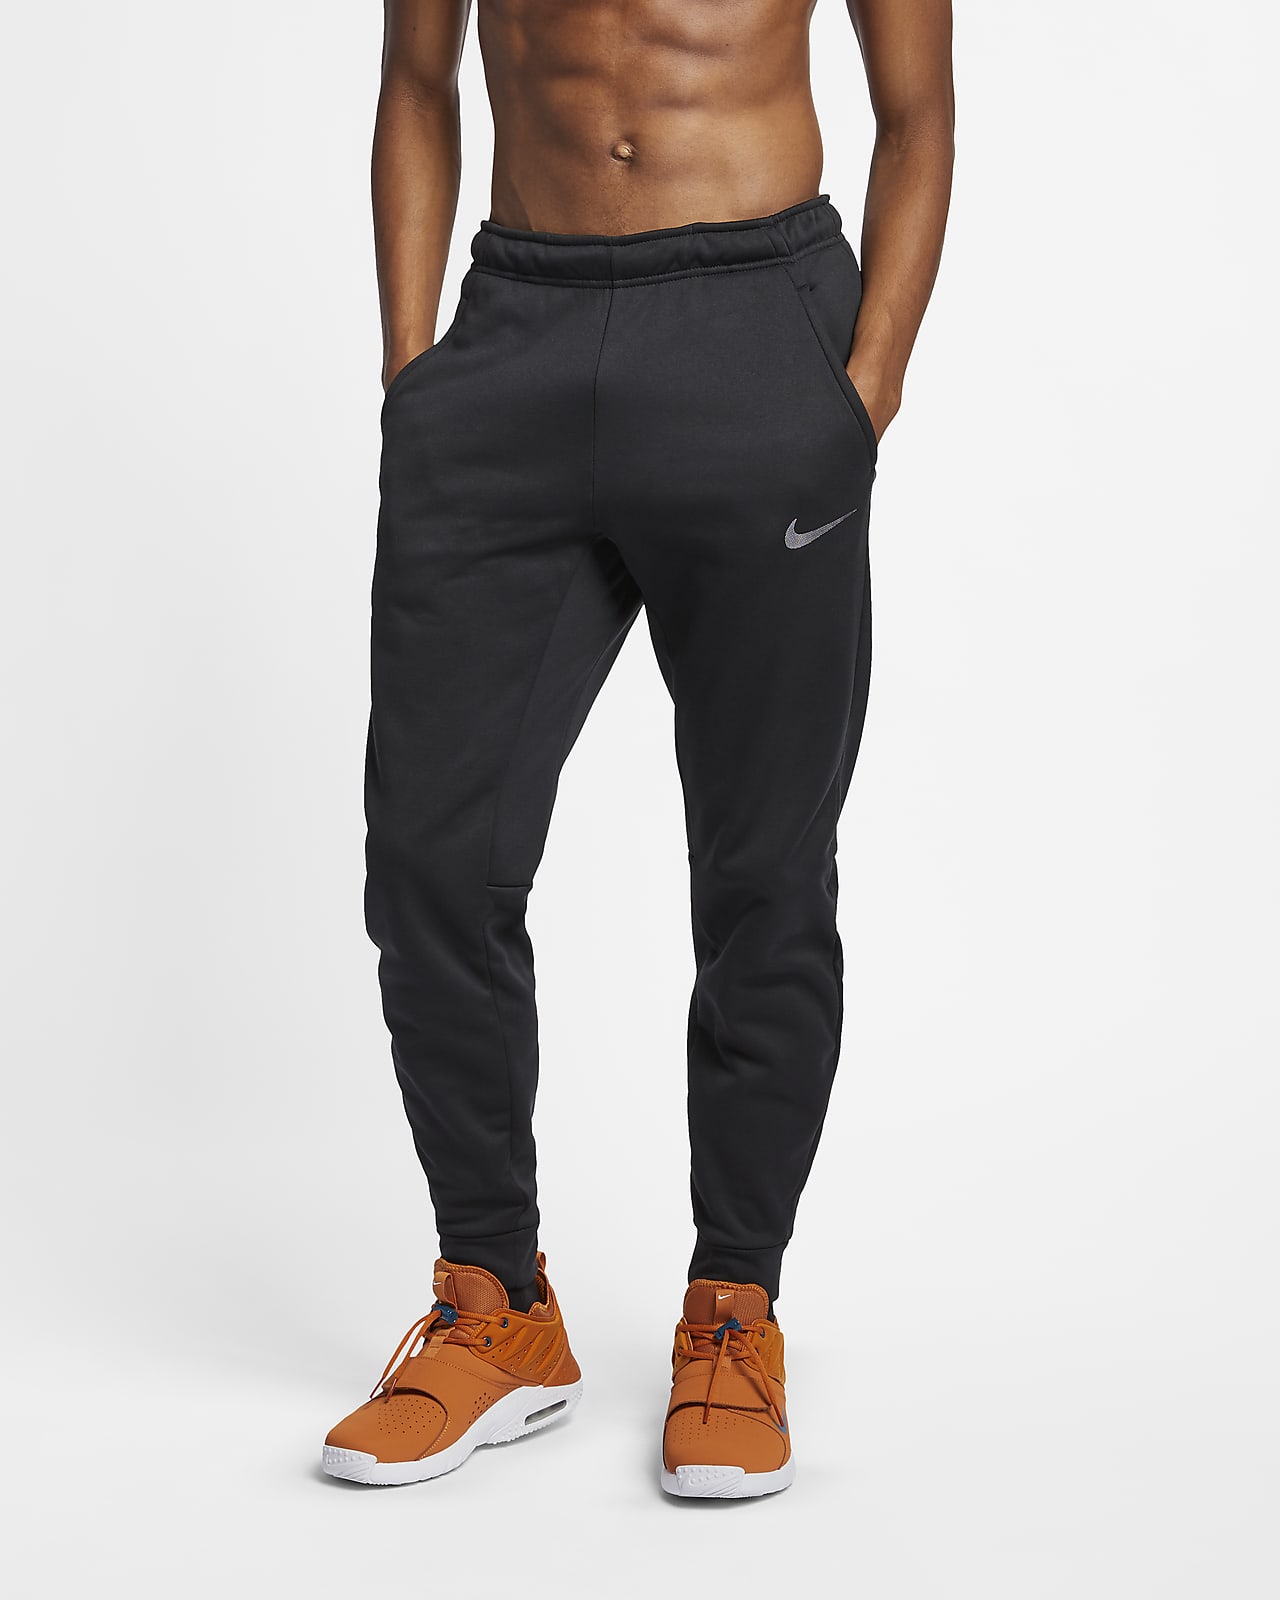 Pantalones de entrenamiento entallados para hombre Nike Therma. Nike.com